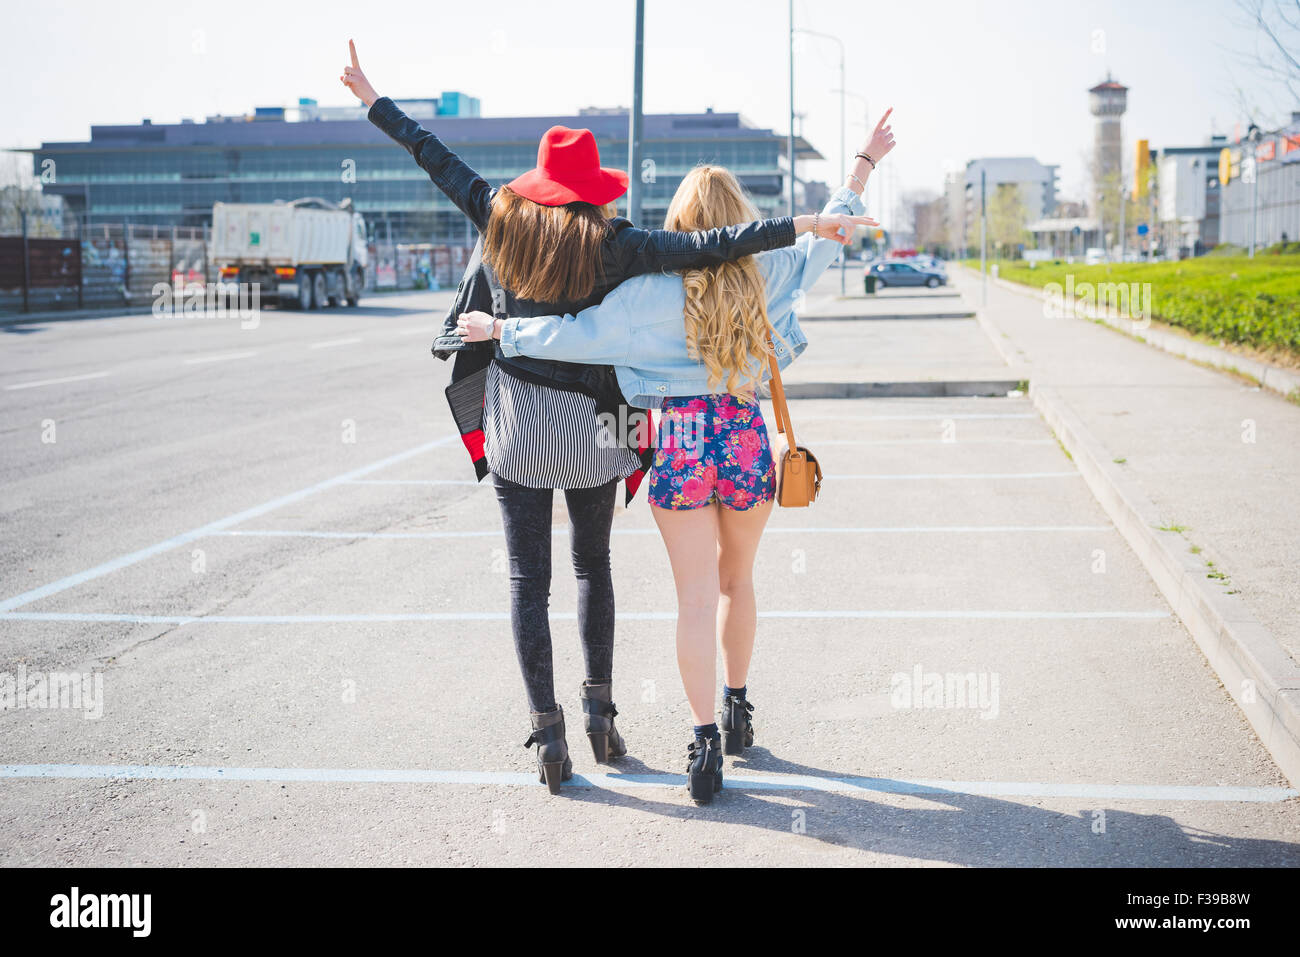 Zwei schöne blonde und Brünette Freunde Spaziergang durch die Stadt umarmt, Hände oben in der Luft, Spaß - Freundschaft, Emanzipation, Glück Konzept - von hinten anzeigen Stockfoto